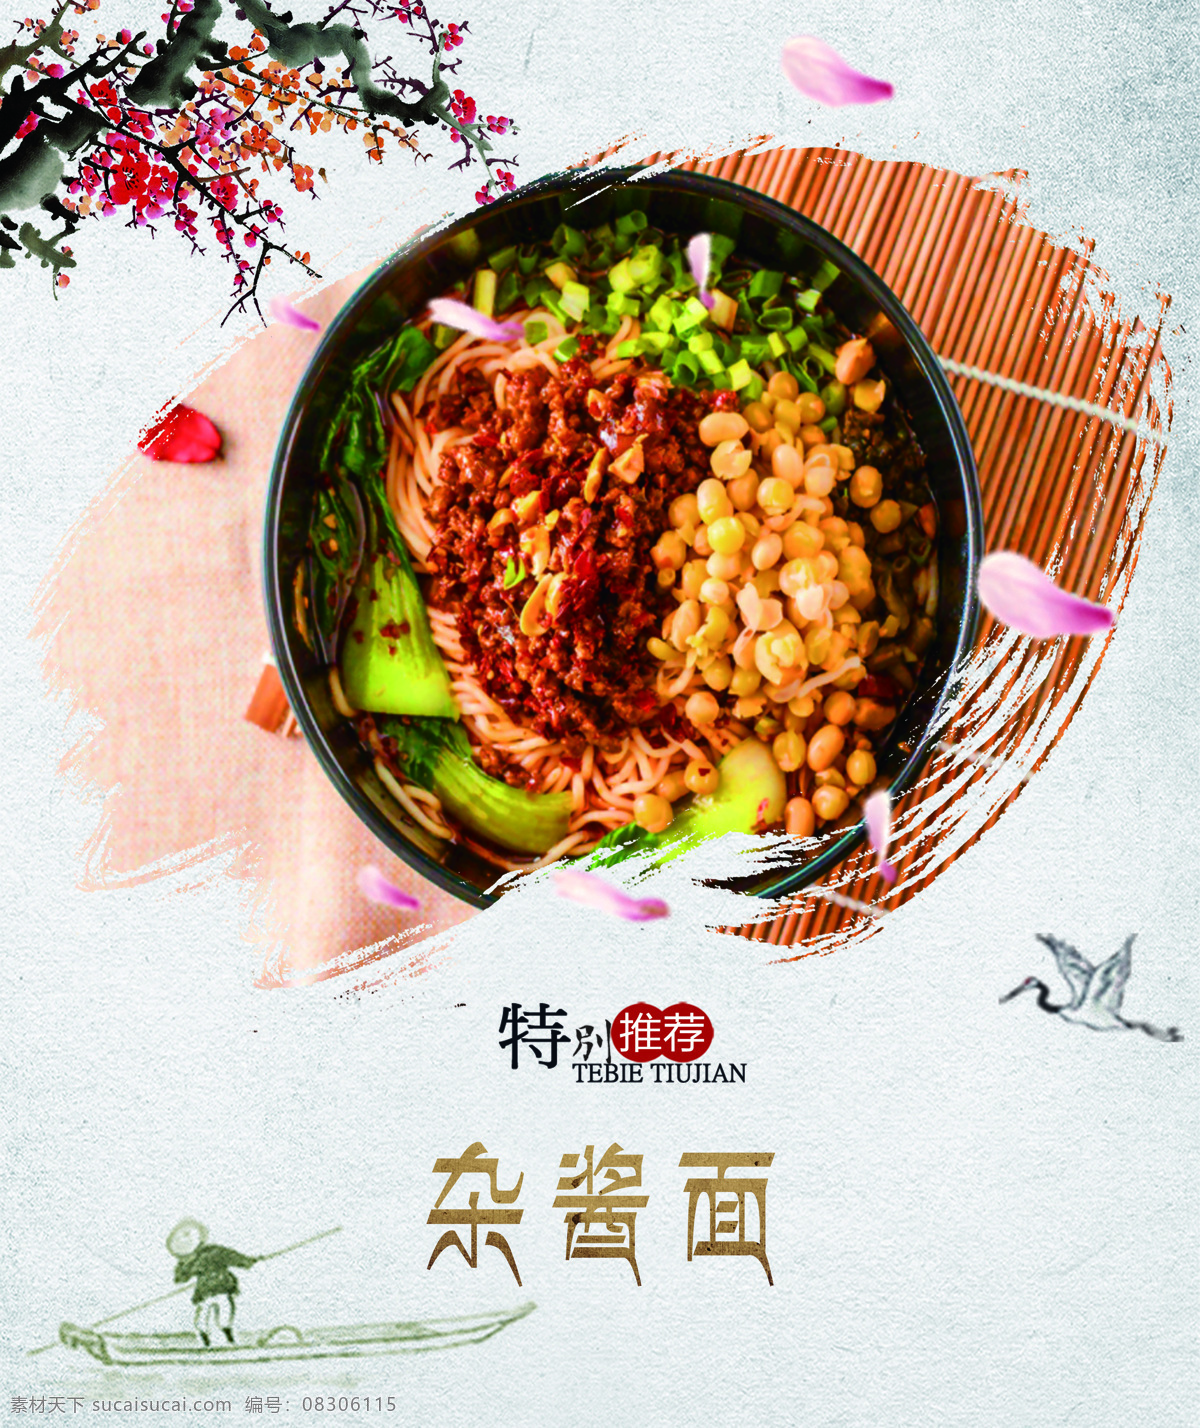 杂酱面 食堂灯箱 菜品 水墨风 中国风 室外广告设计